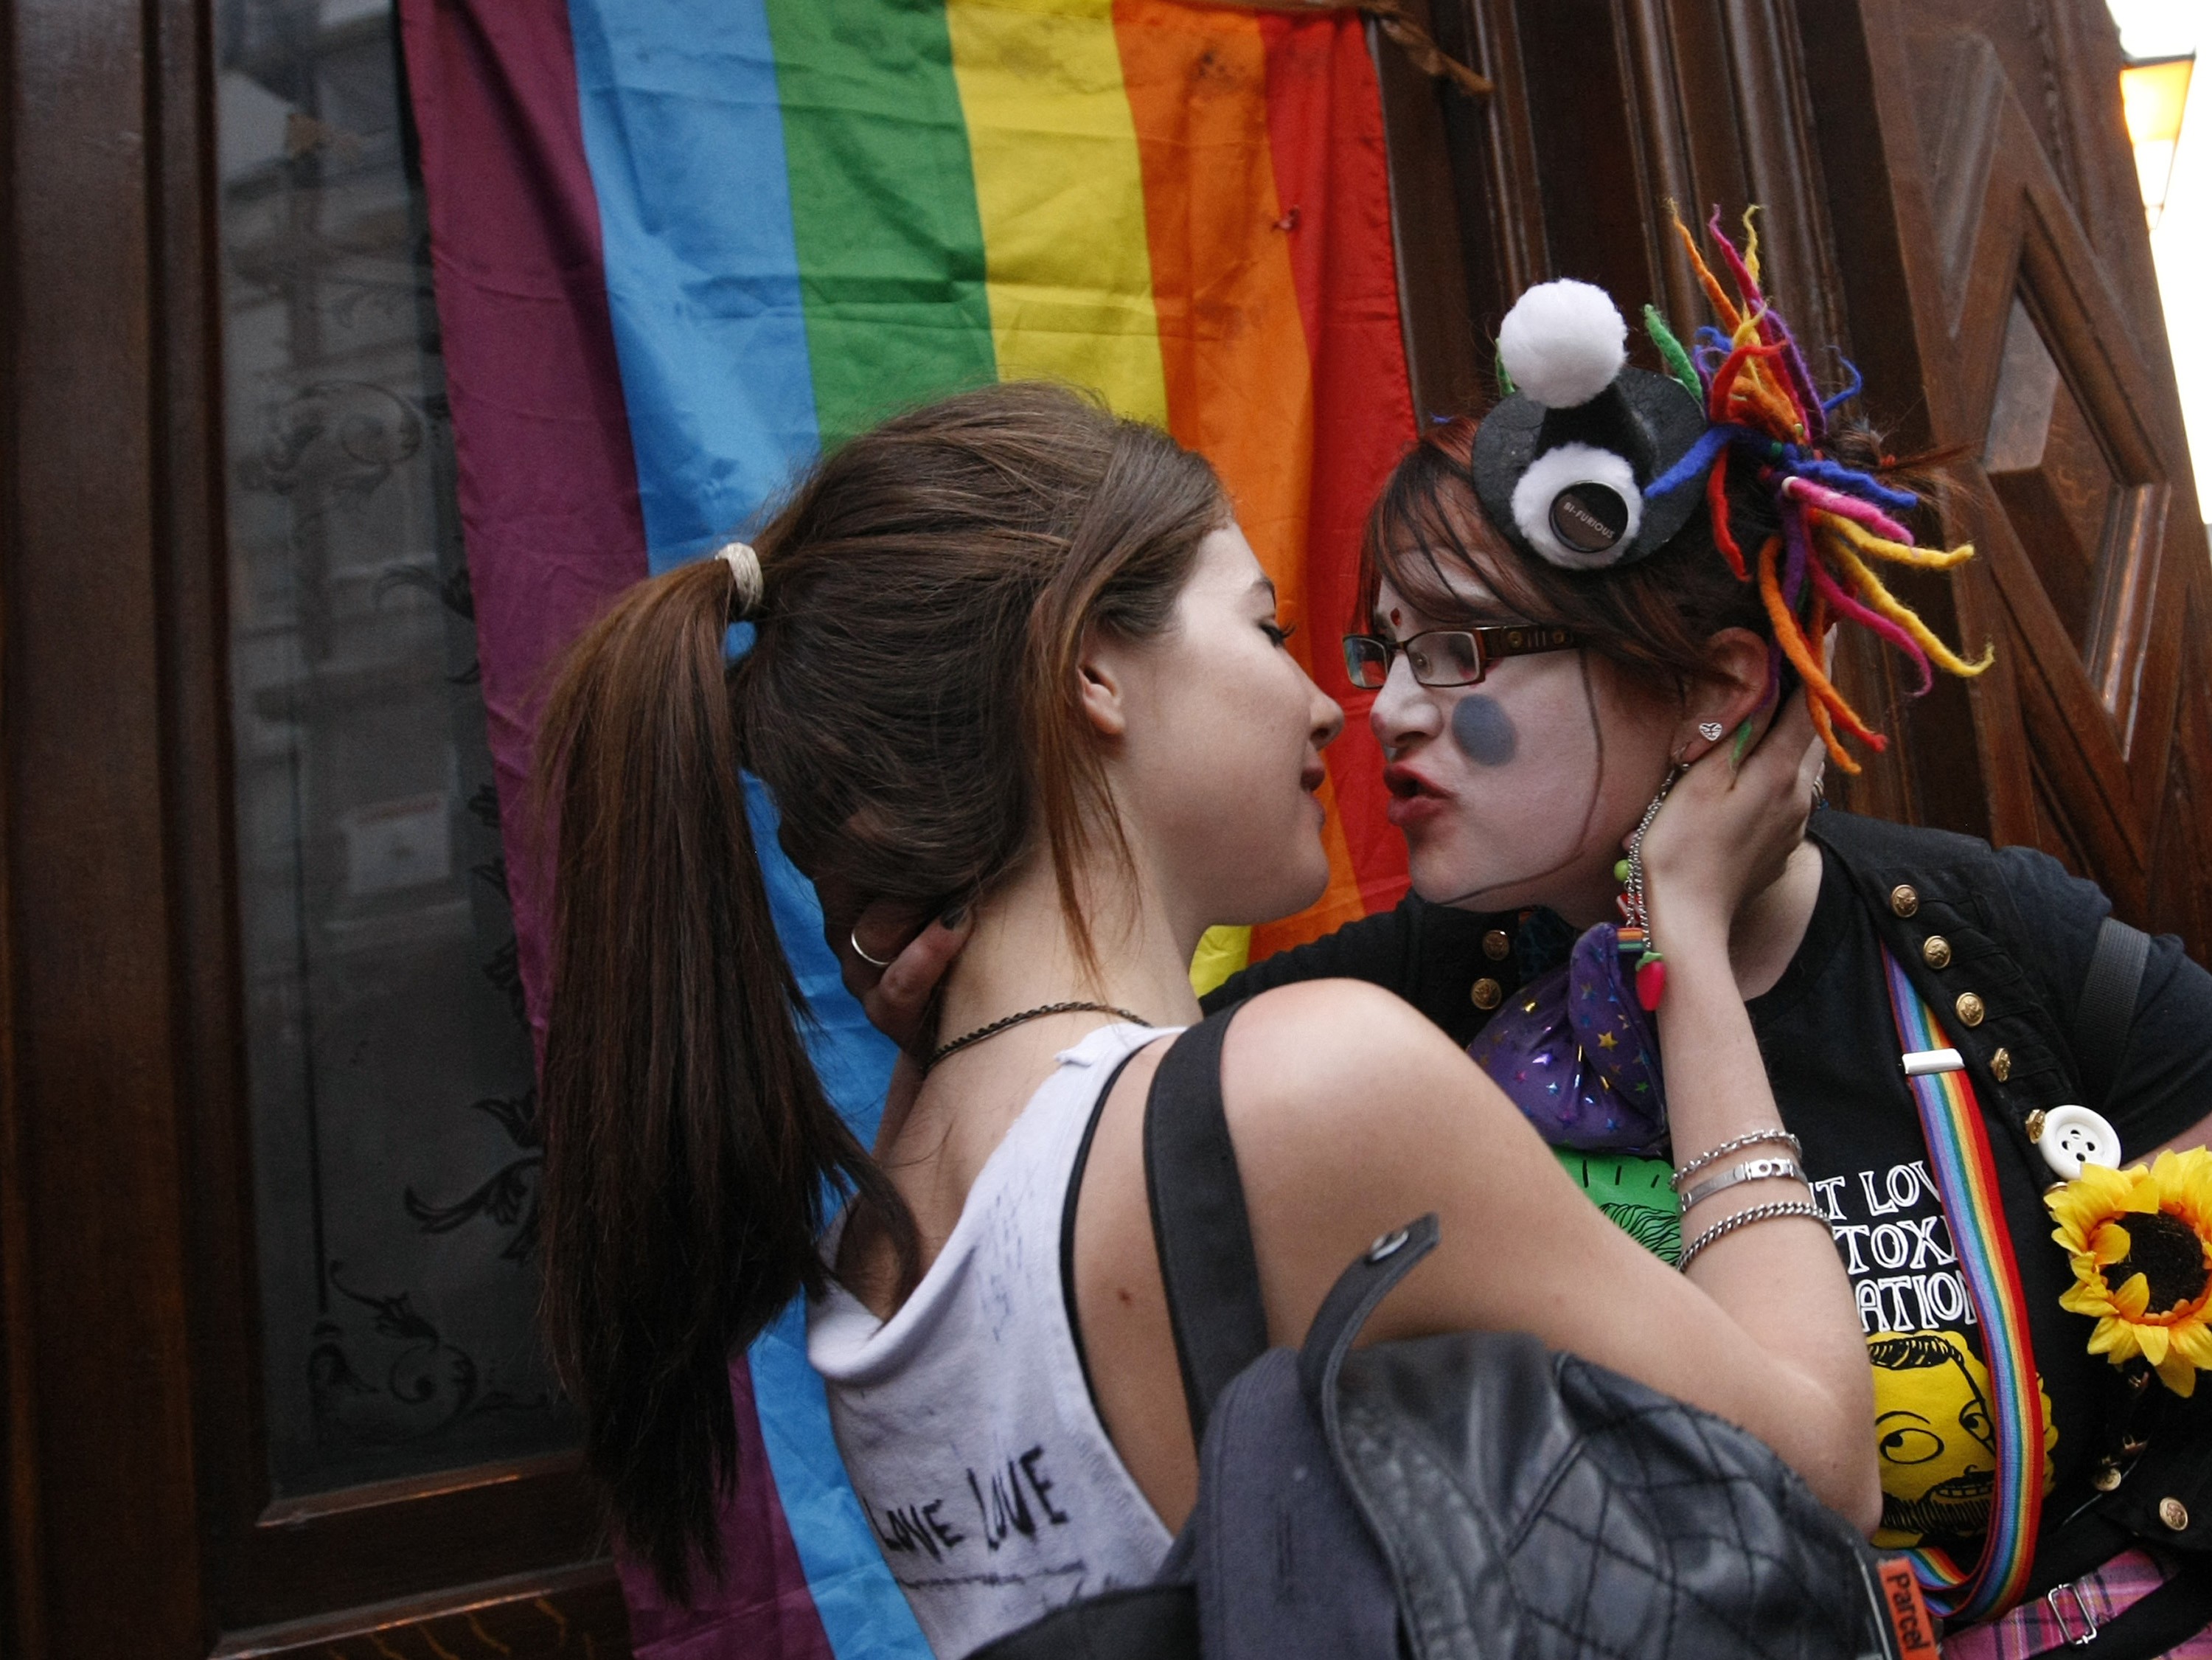 Detta resulterade i en massprotest där 600 personer dök upp för att hångla utanför den pub gayparet tidigare blivit utkastade från.